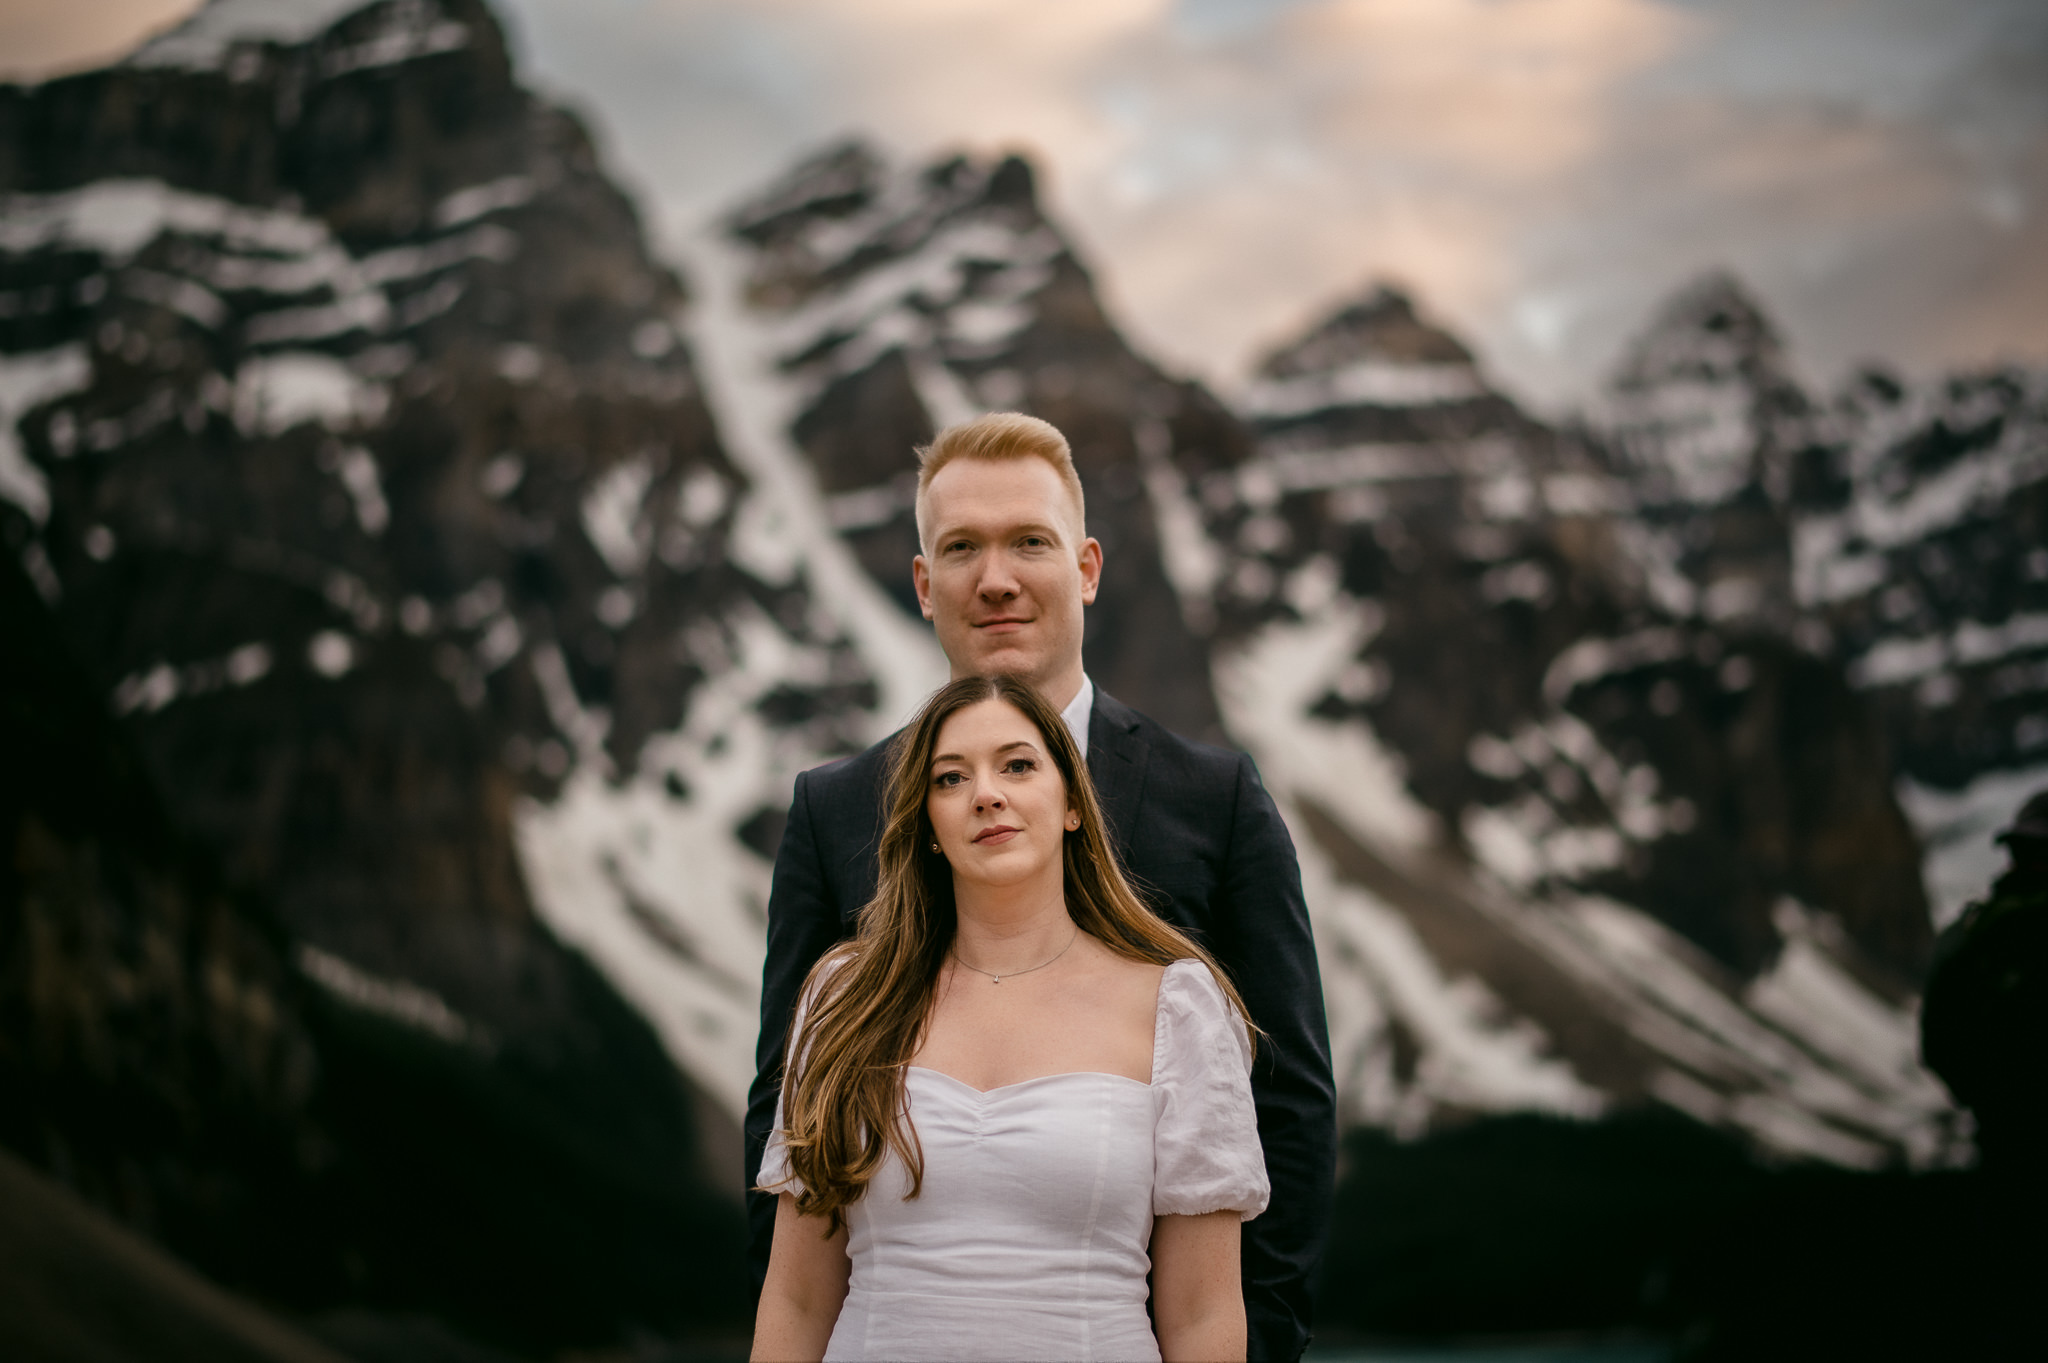 The Leddas Wedding Photography - Fatina & Greg: Lake Louise Engagement